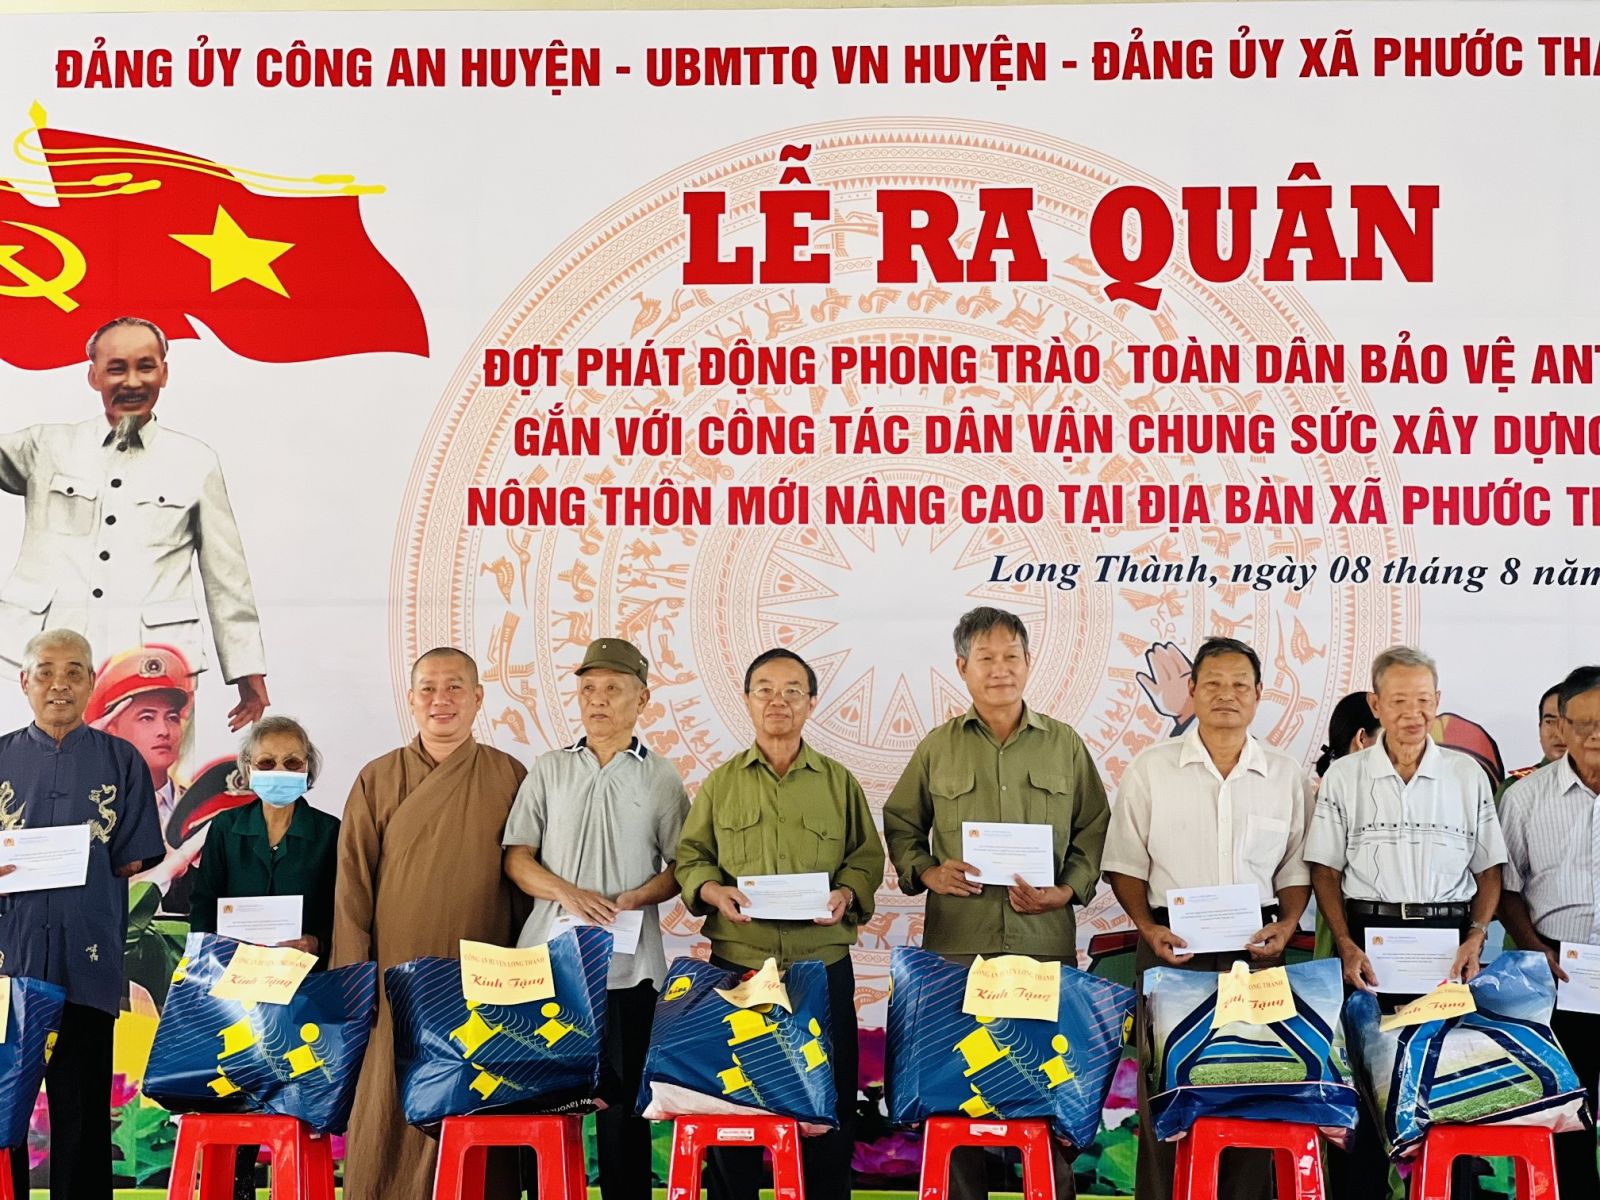 Long Thành: Thiền tự Phước Quang trao tặng quà nhân dịp lễ ra quân Phát động phong trào toàn dân bảo vệ An ninh Tổ quốc.